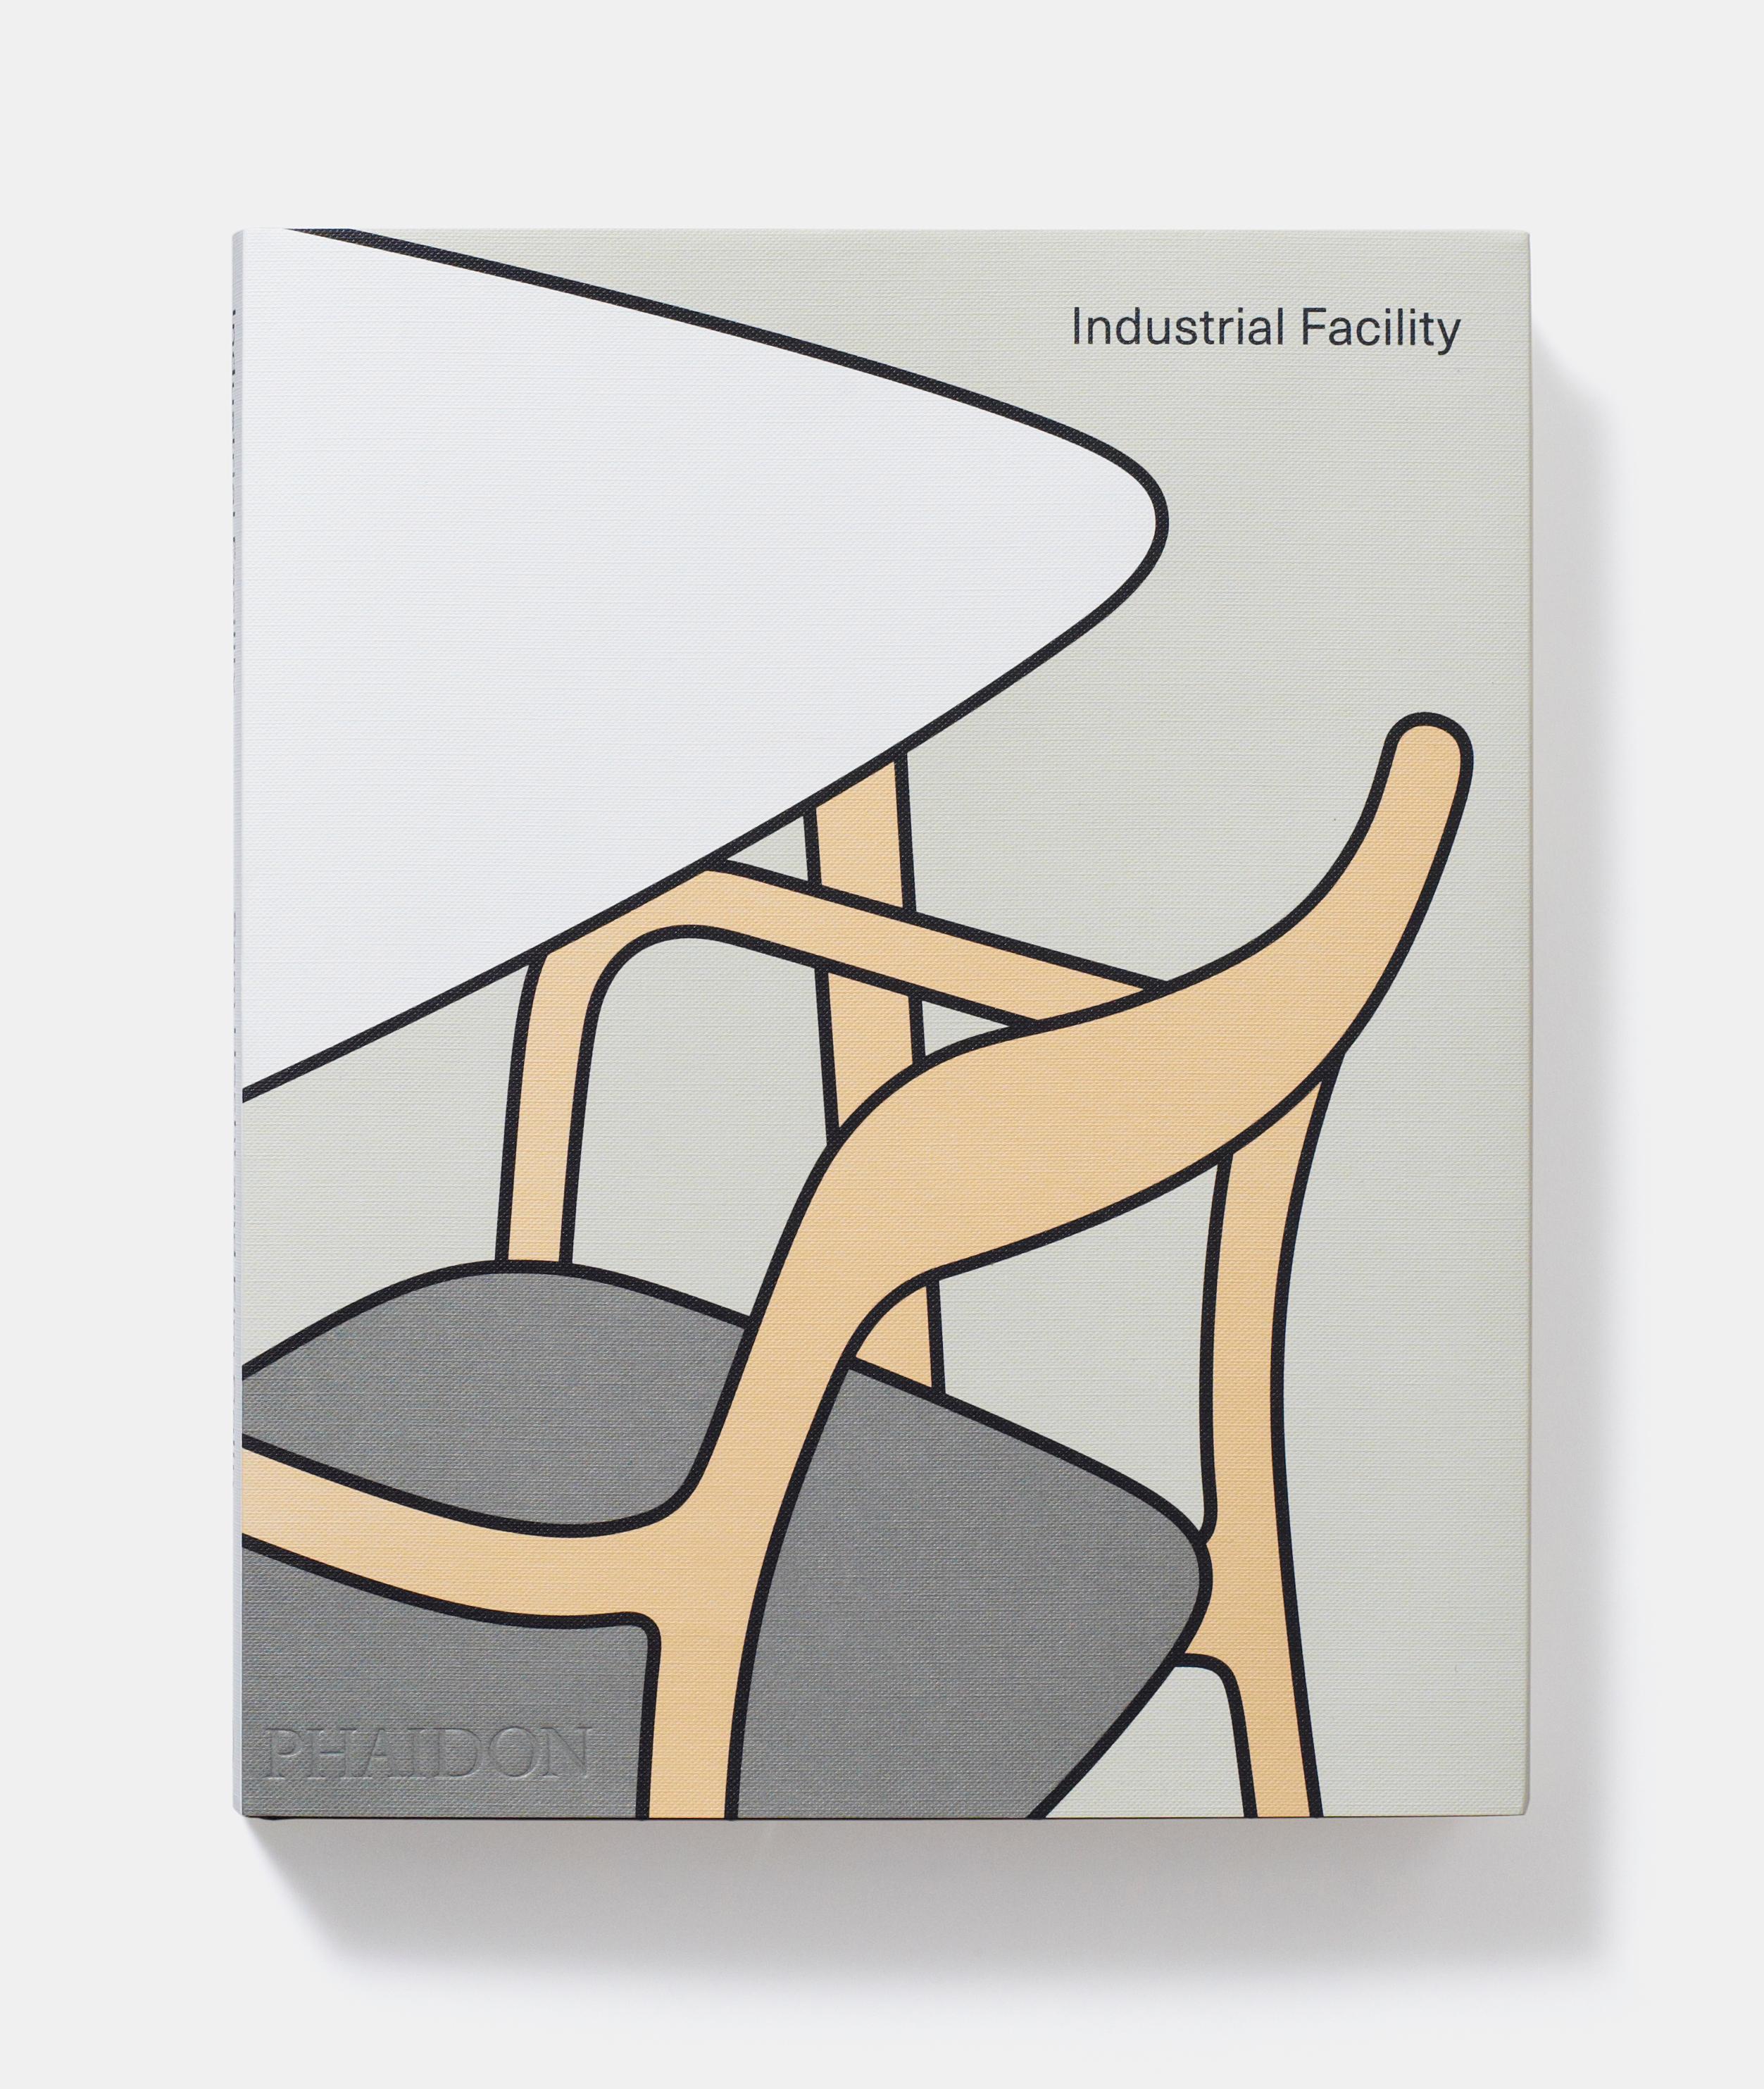 La première monographie sur l'ensemble des travaux du studio de design primé Industrial Facility.

Le studio londonien de Sam Hecht et Kim Colin, de renommée mondiale, est l'un des plus influents dans le domaine du Design Industriel, et leur travail